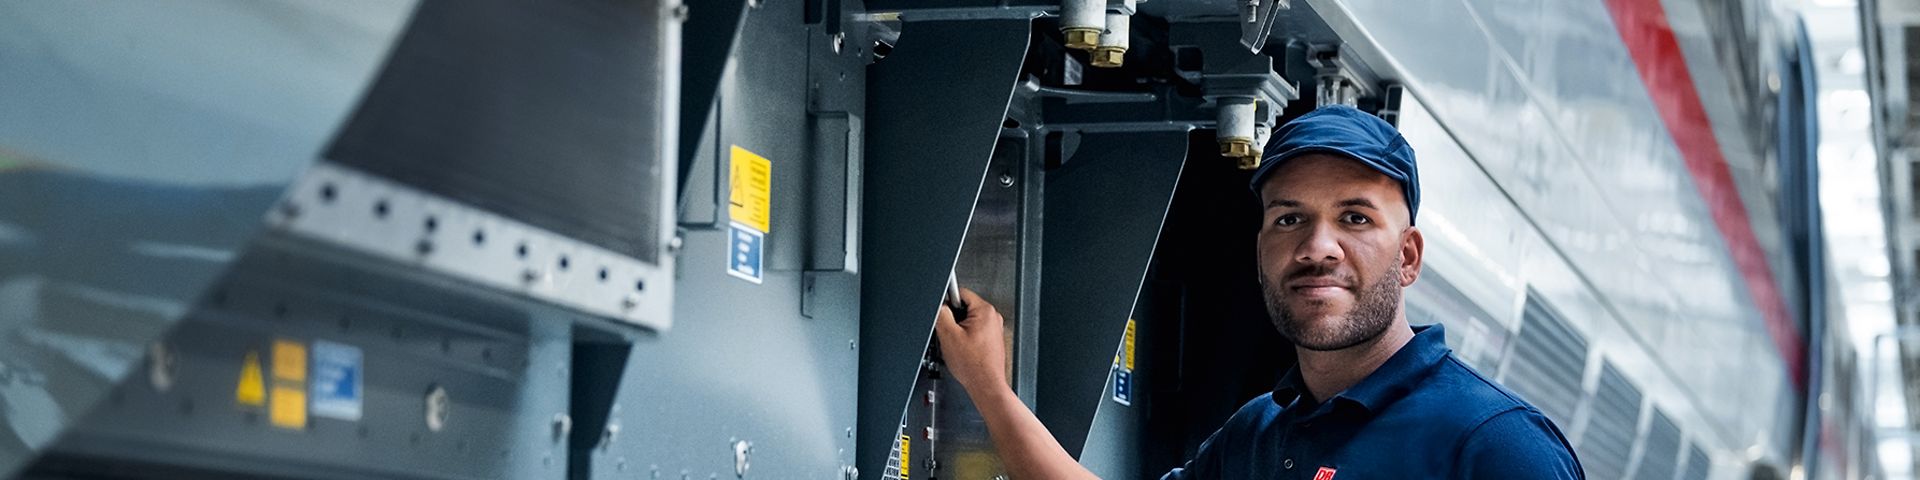 Ein Elektroniker prüft die elektronischen Schutzvorrichtungen des Zuges an der Zugaußenseite